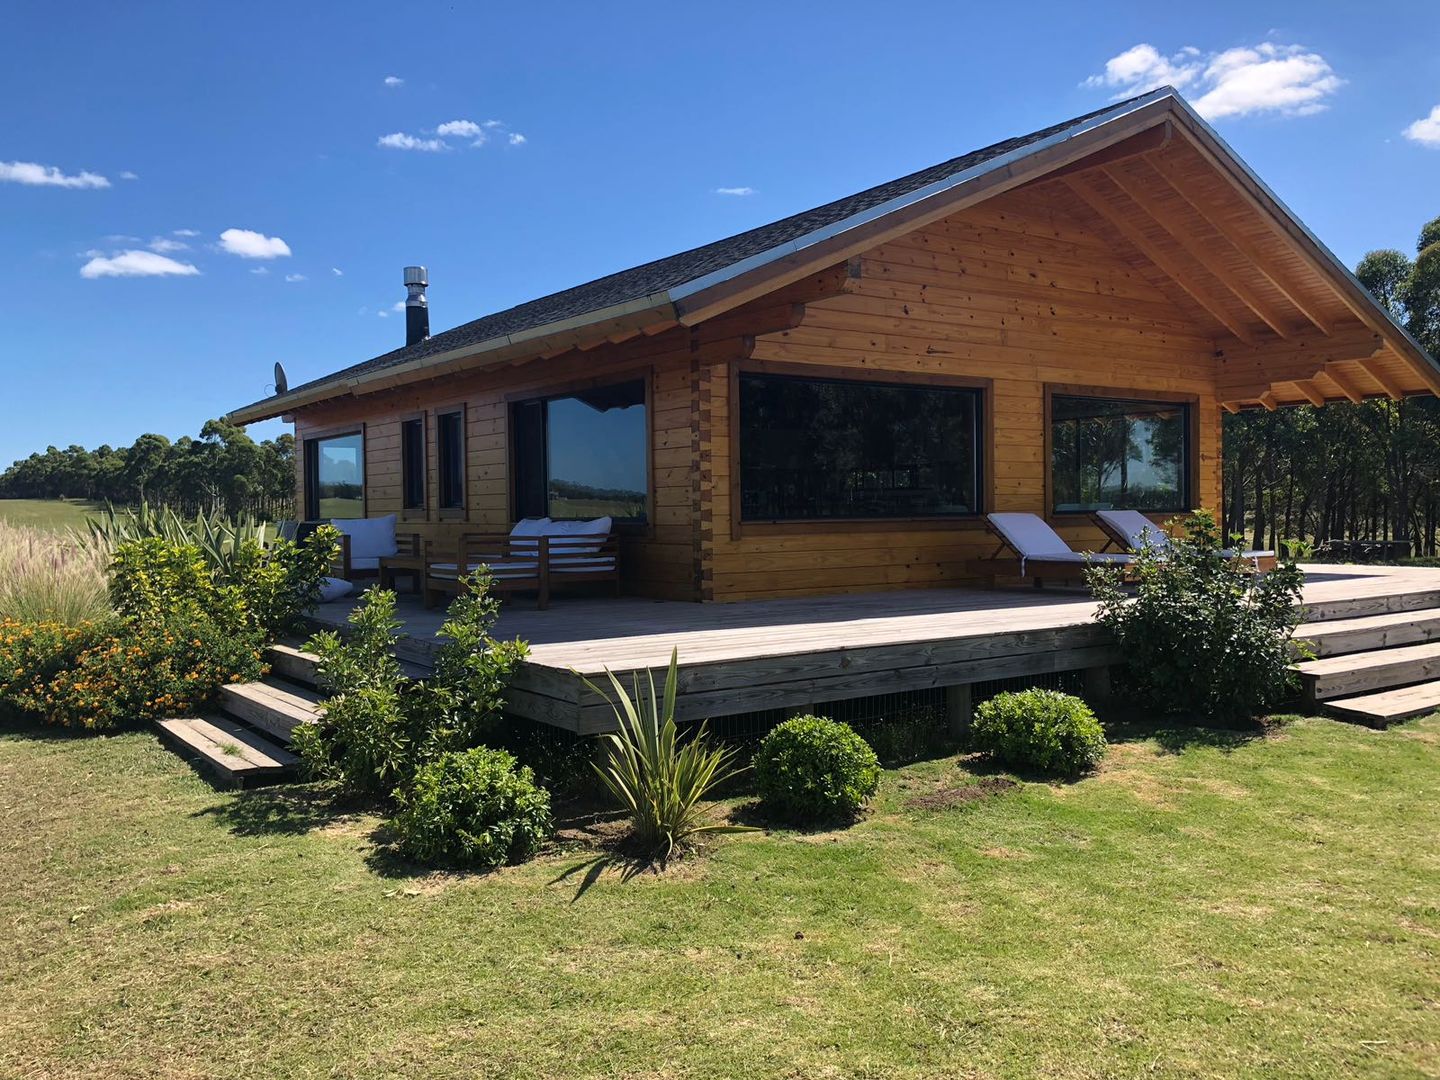 Proyecto Laguna de los Cisnes en Uruguay, Patagonia Log Homes - Arquitectos - Neuquén Patagonia Log Homes - Arquitectos - Neuquén Single family home